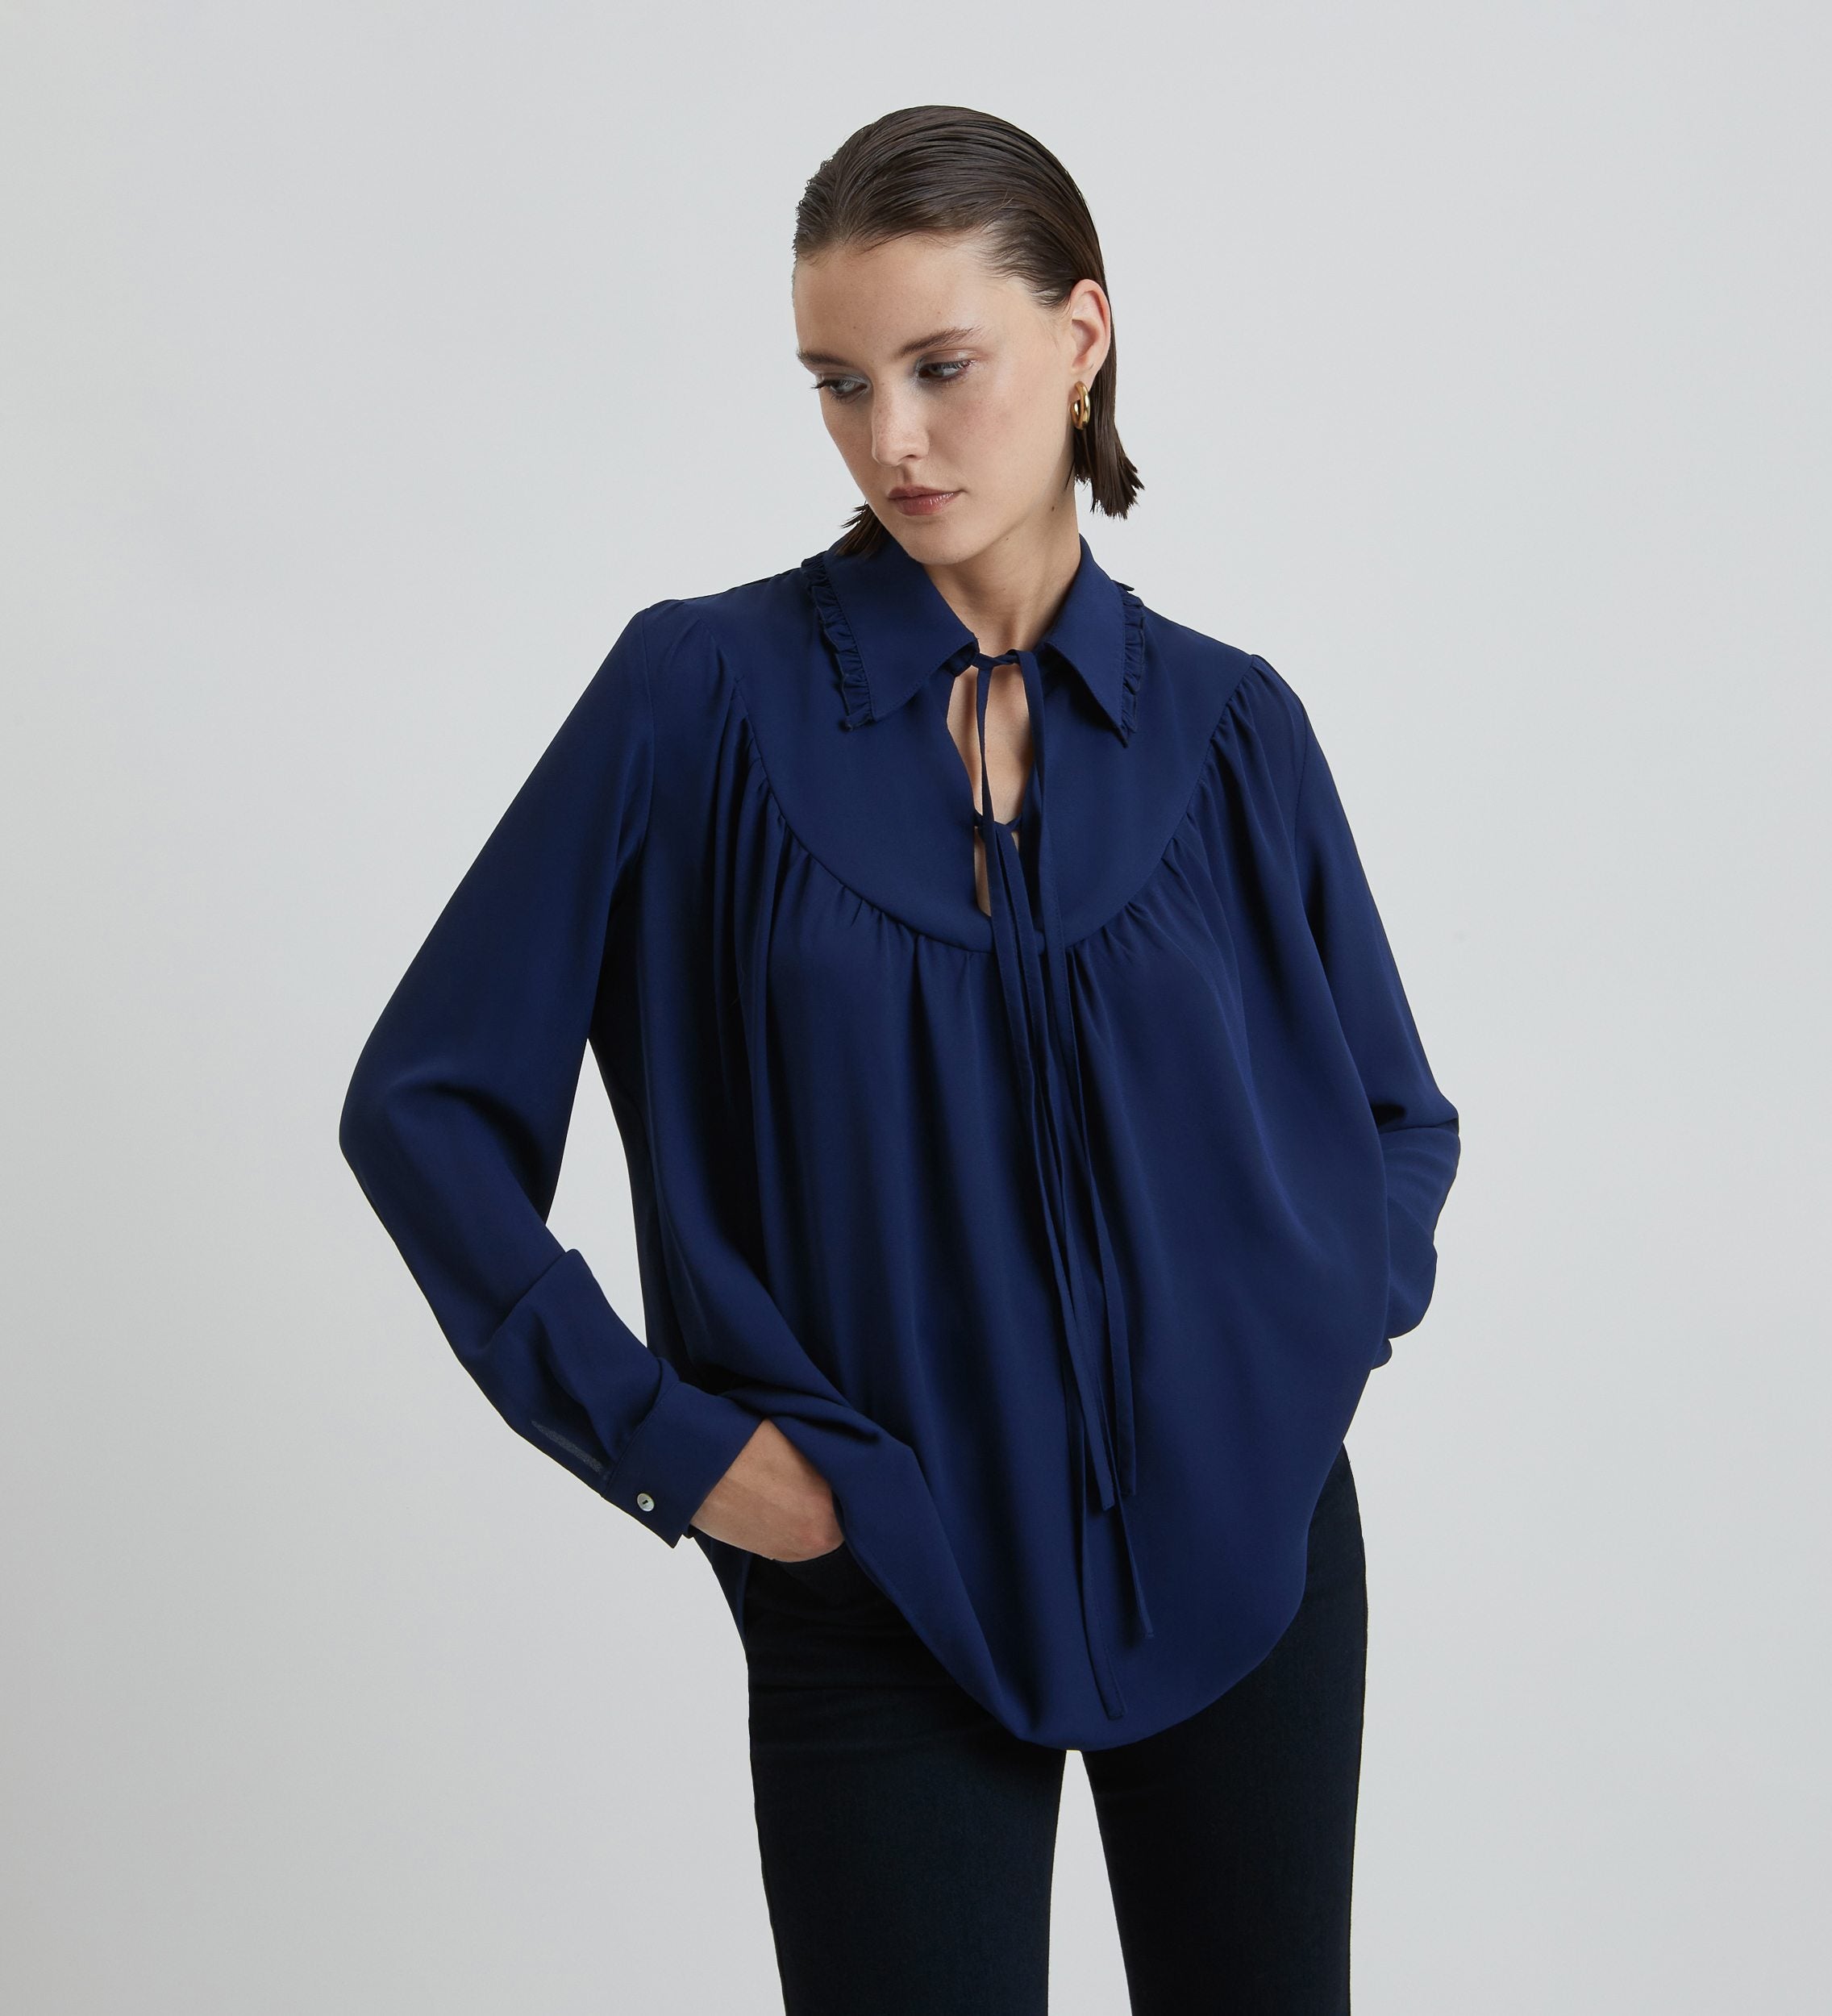 Flowy pecherín blouse